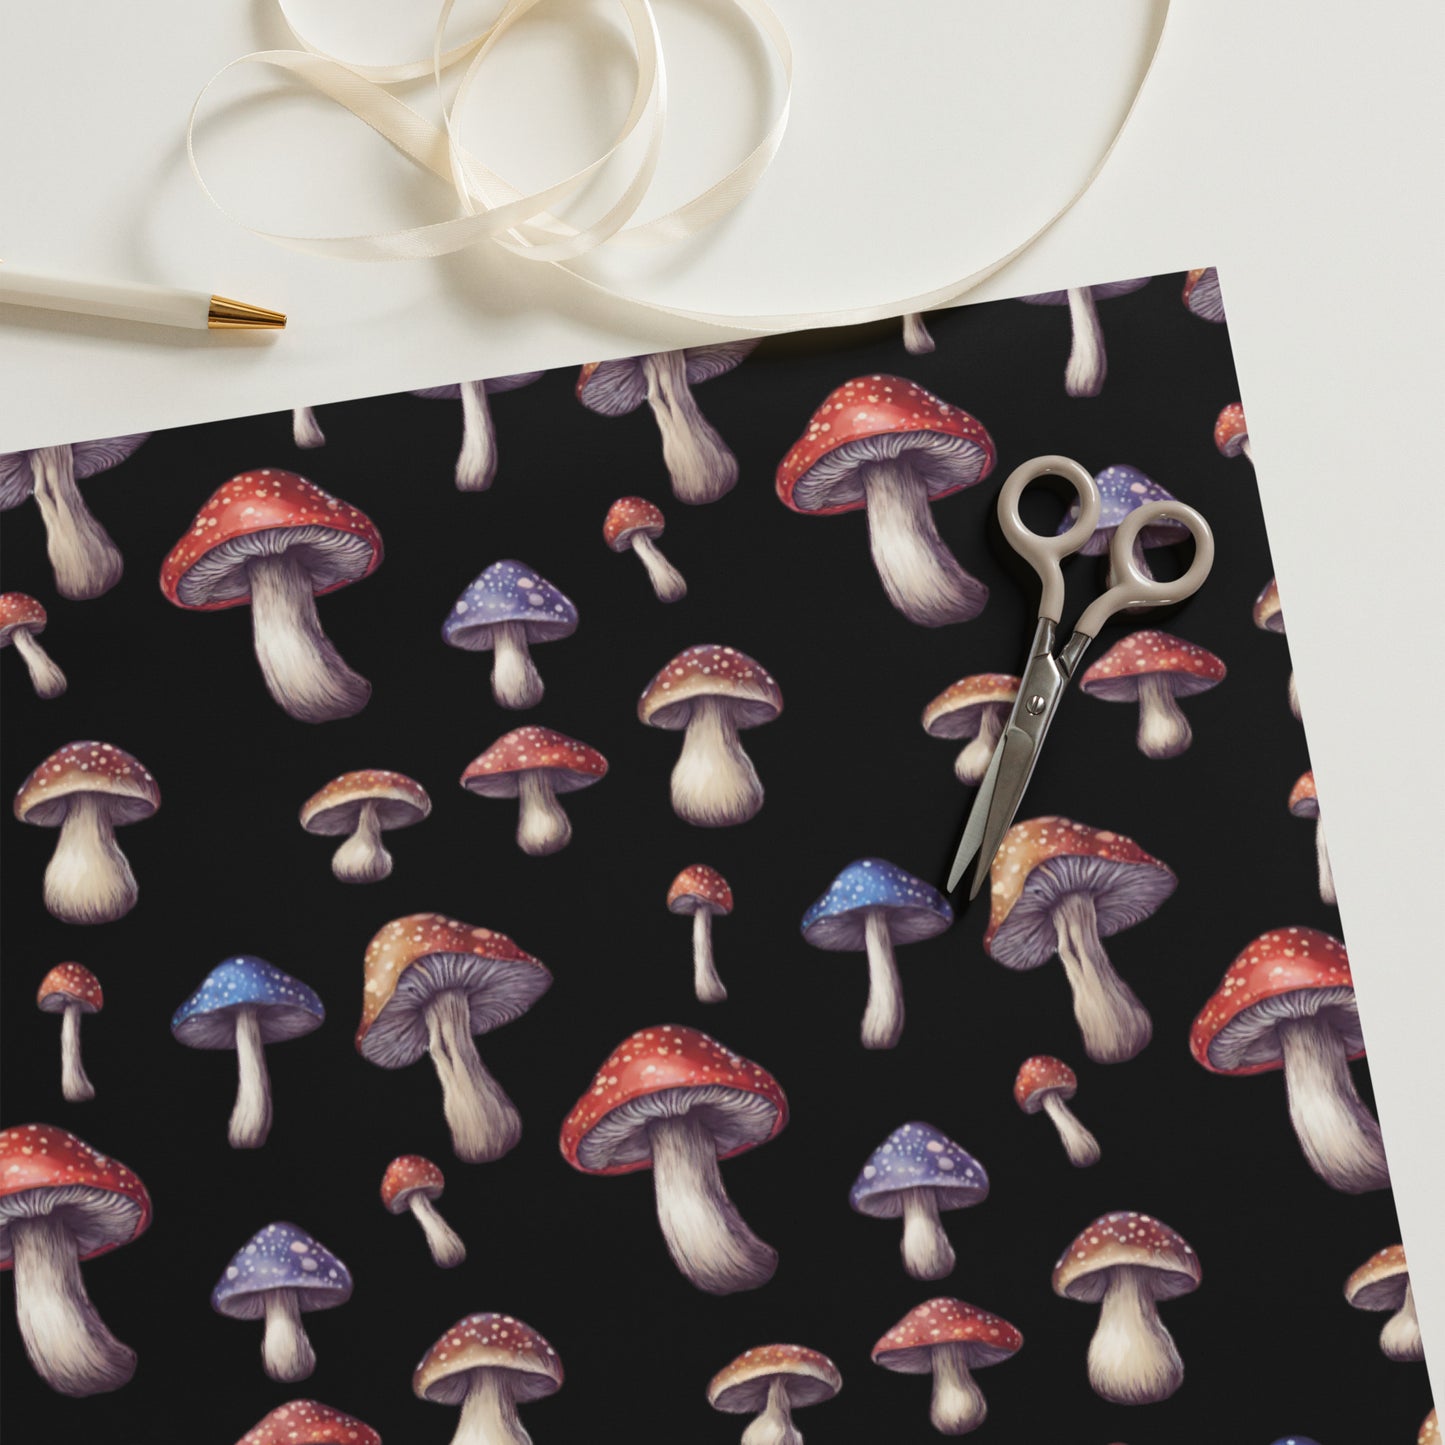 Amanita Mushrooms Wrapping paper sheets